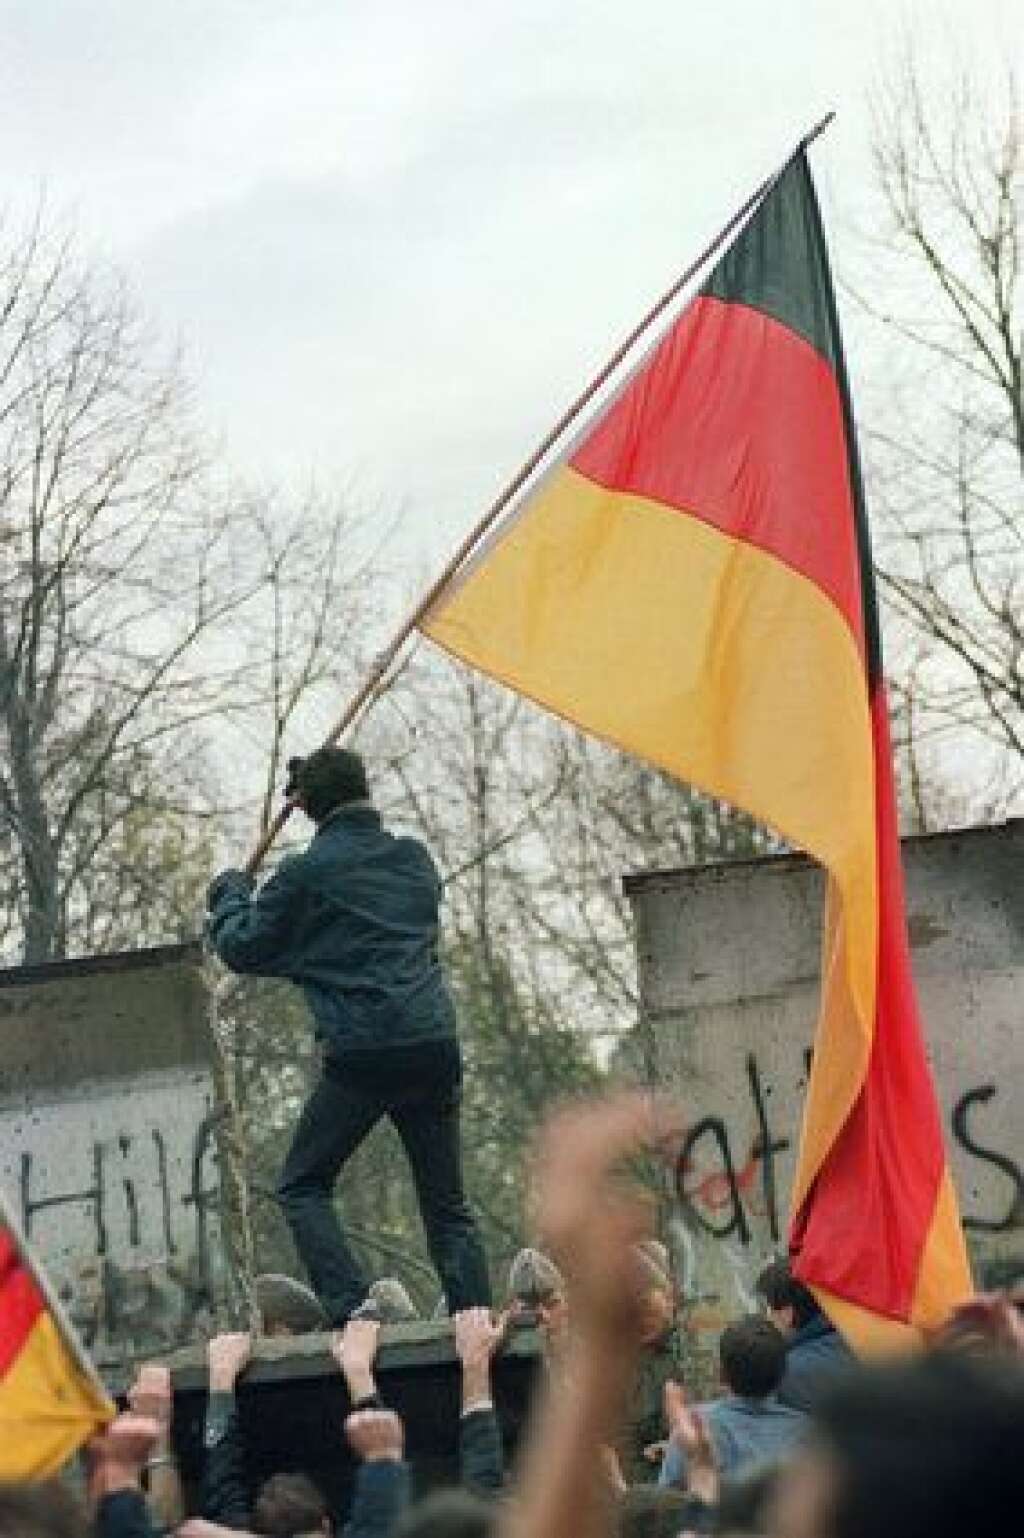 11 novembre 1989 - Un Allemand de l'Ouest s'apprête à planter symboliquement le drapeau de la RFA de l'autre côté du mur.